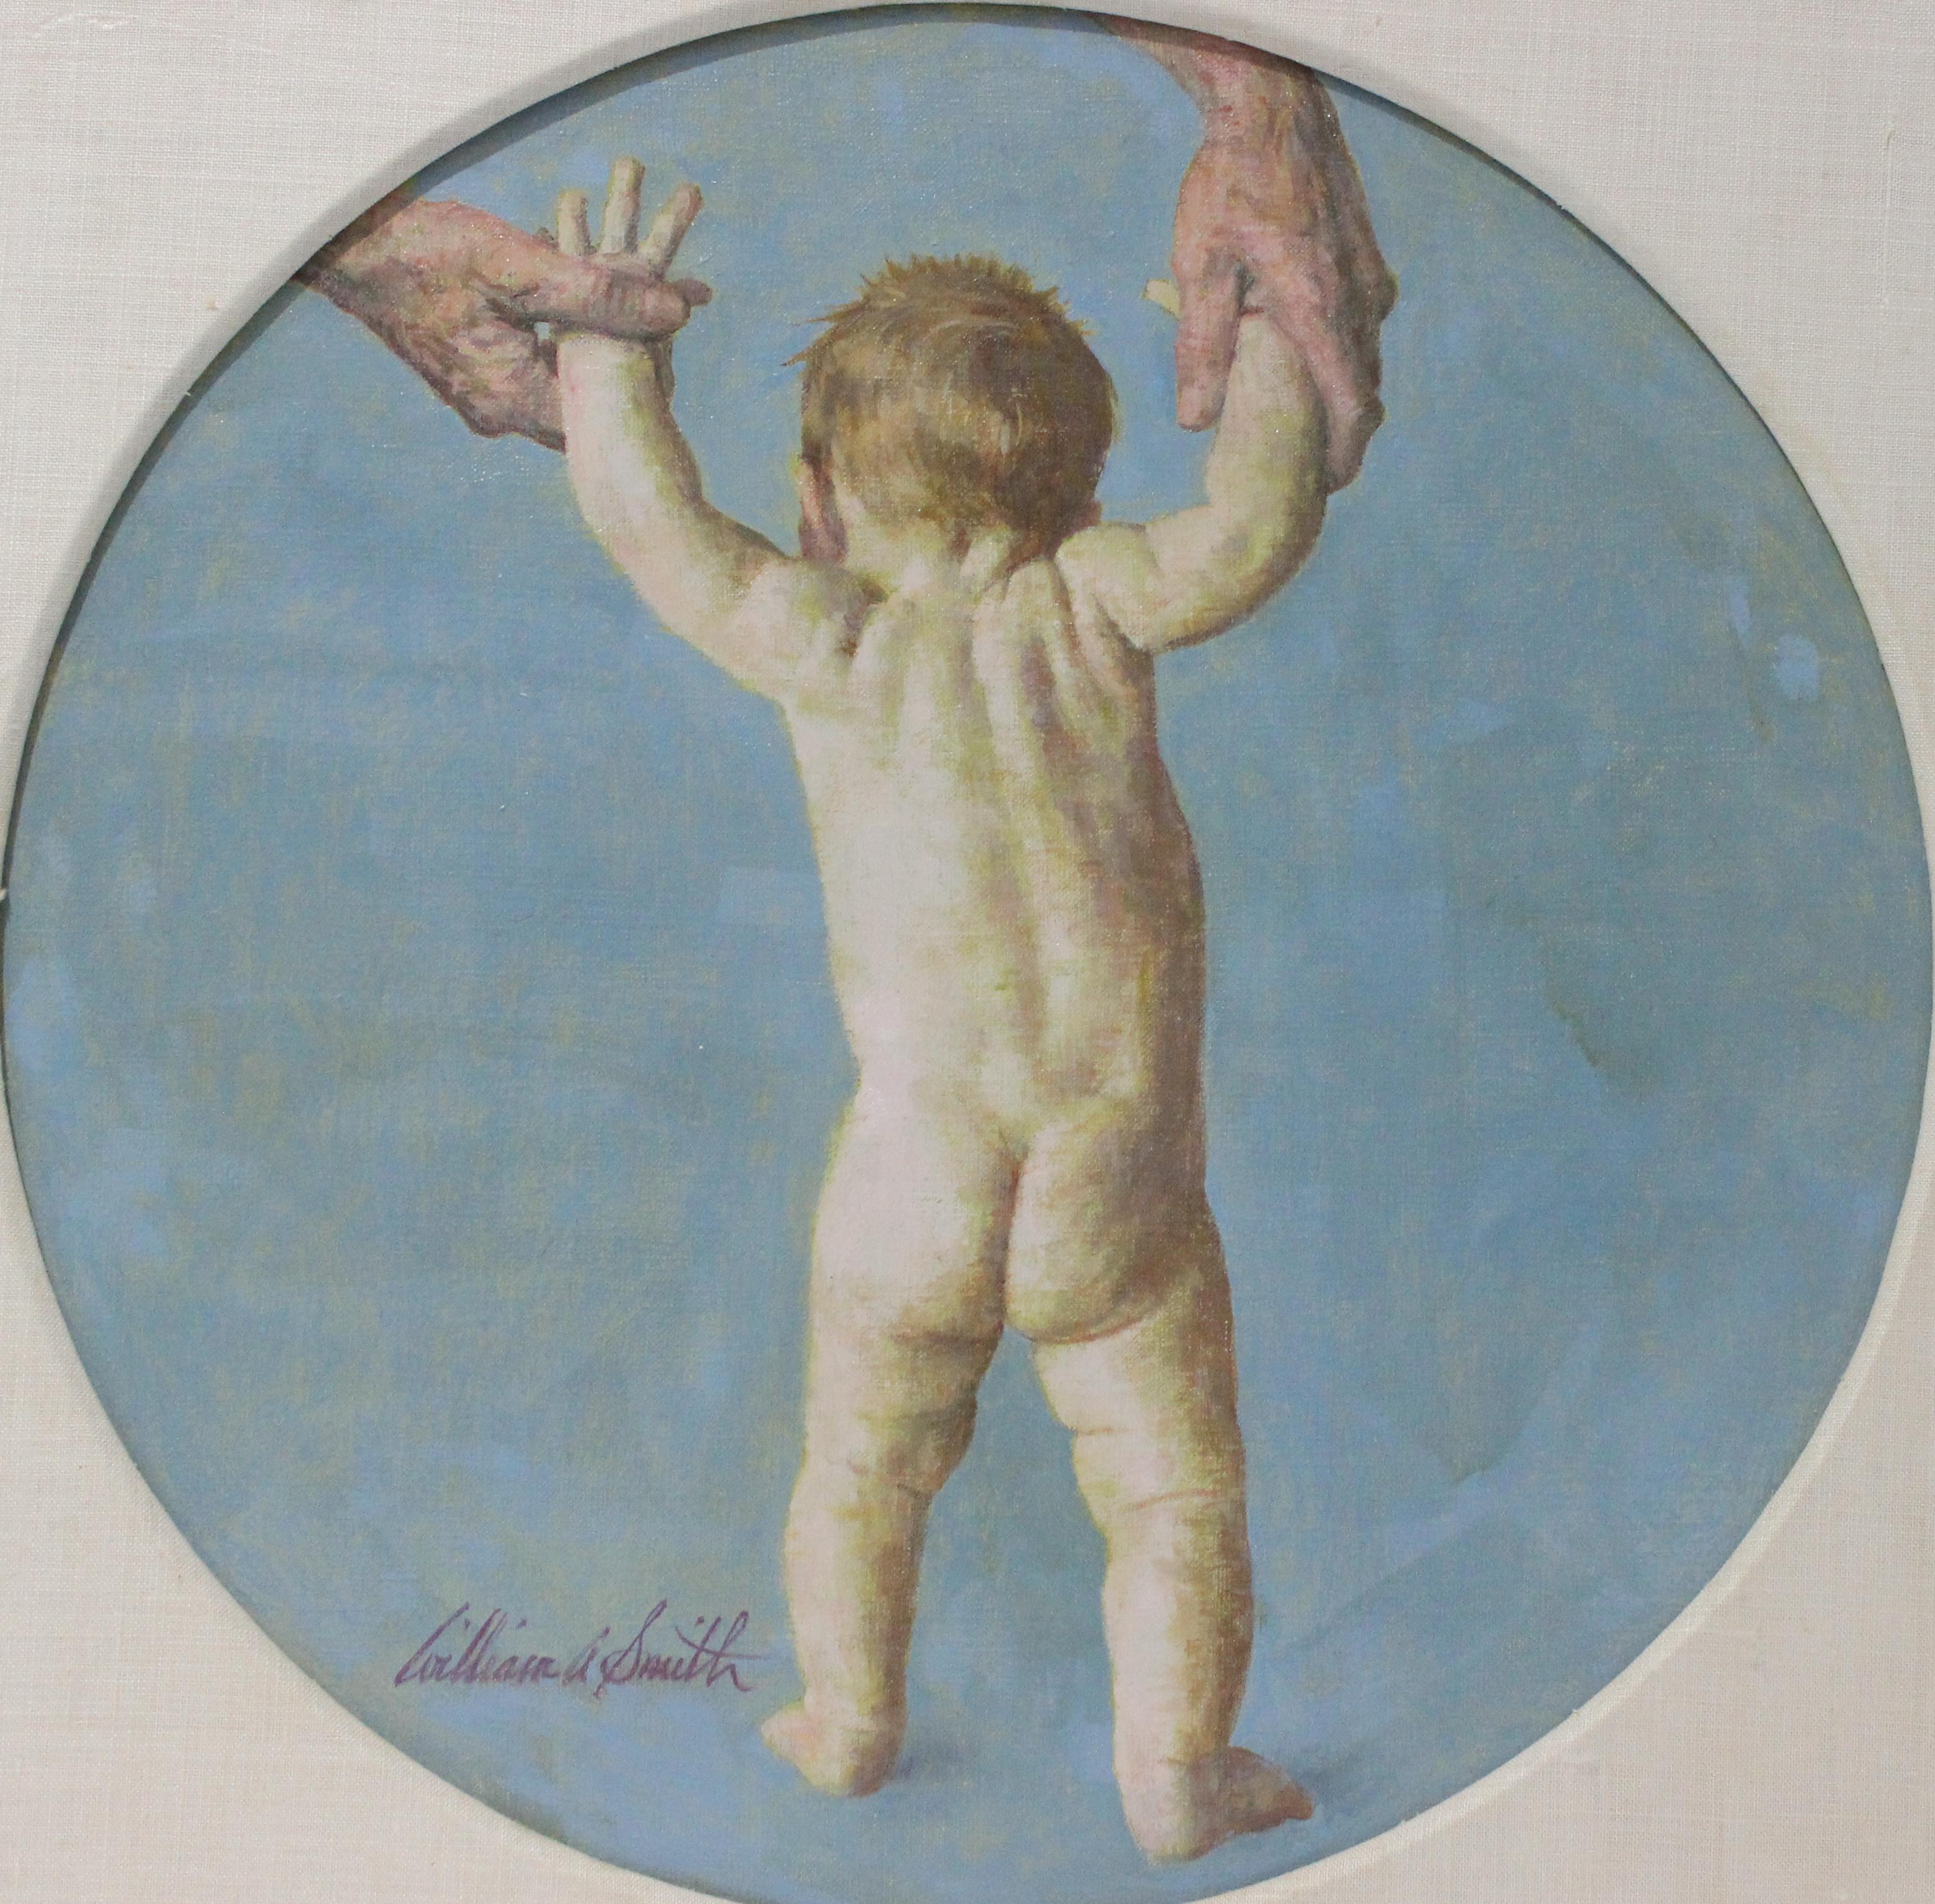 Ce charmant tableau a probablement été commandé par un particulier pour célébrer les premiers pas d'un enfant, ou peut-être pour l'illustration d'un magazine. 

William A. Smith (américain) 
b1918-d1989

POUR INFORMATION :
L'artiste William A.